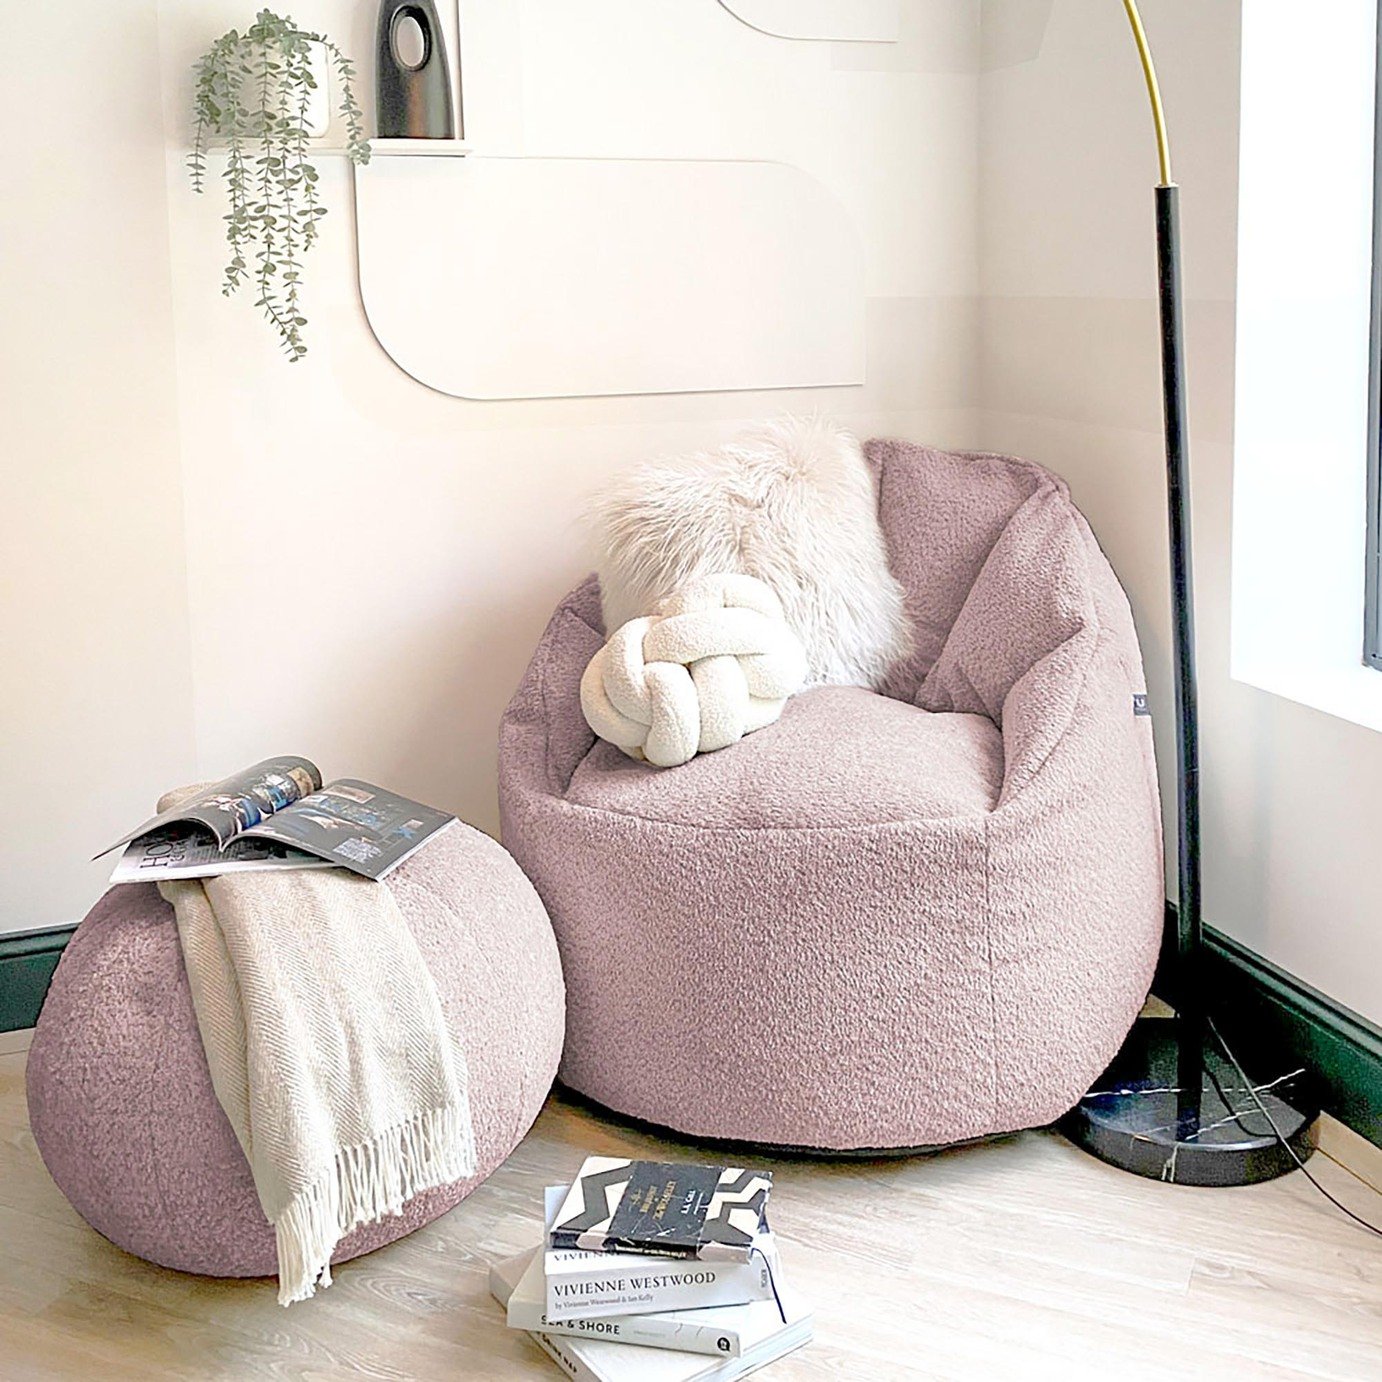 rucomfy Fabric Snug Cinema Bean Bag Chair - Blush Pink